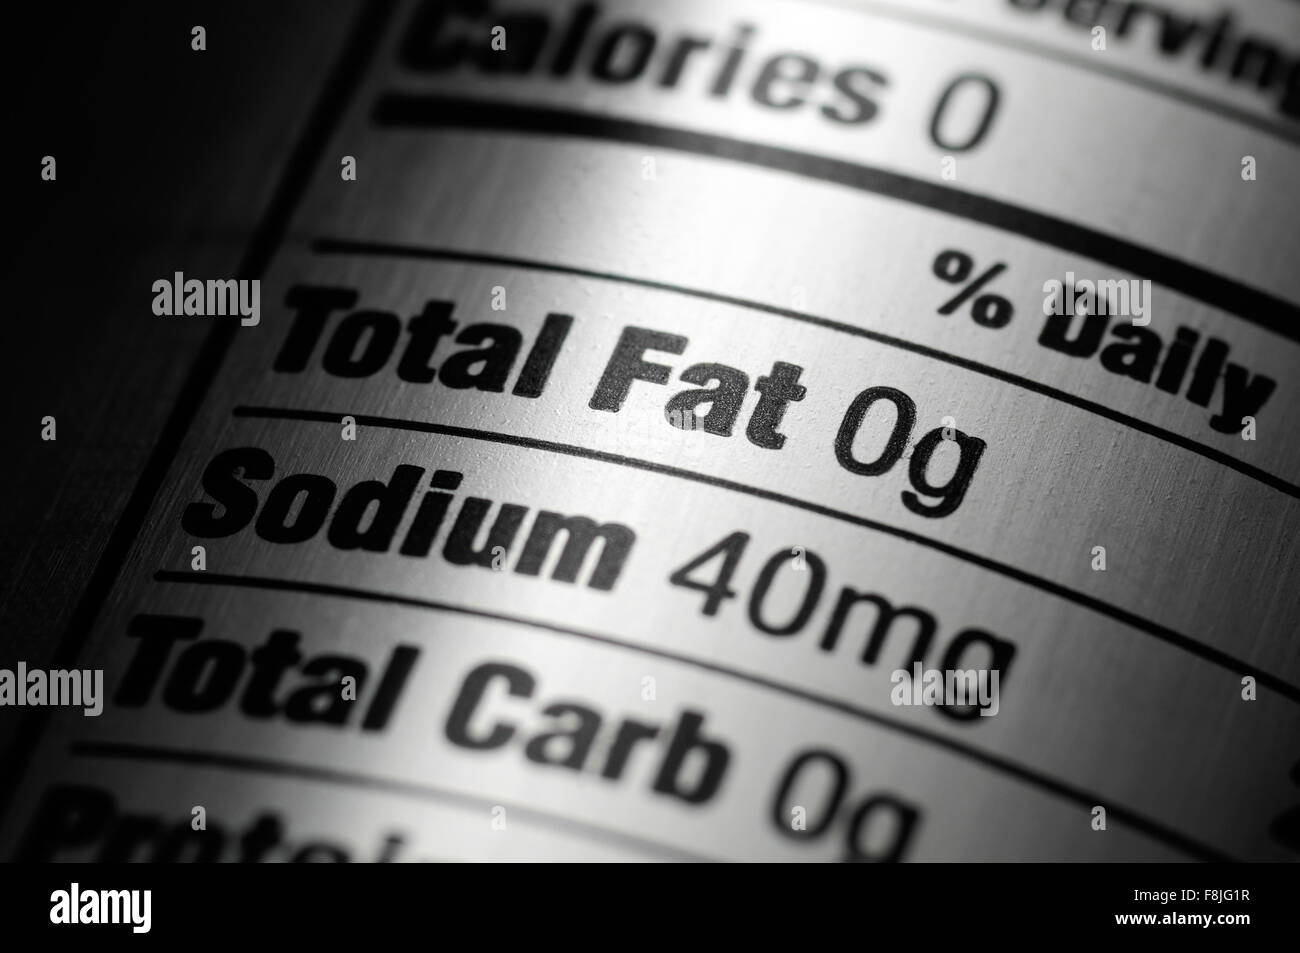 Ingrédients nutrition label d'un régime alimentaire en aluminium argent soda pop peut Banque D'Images